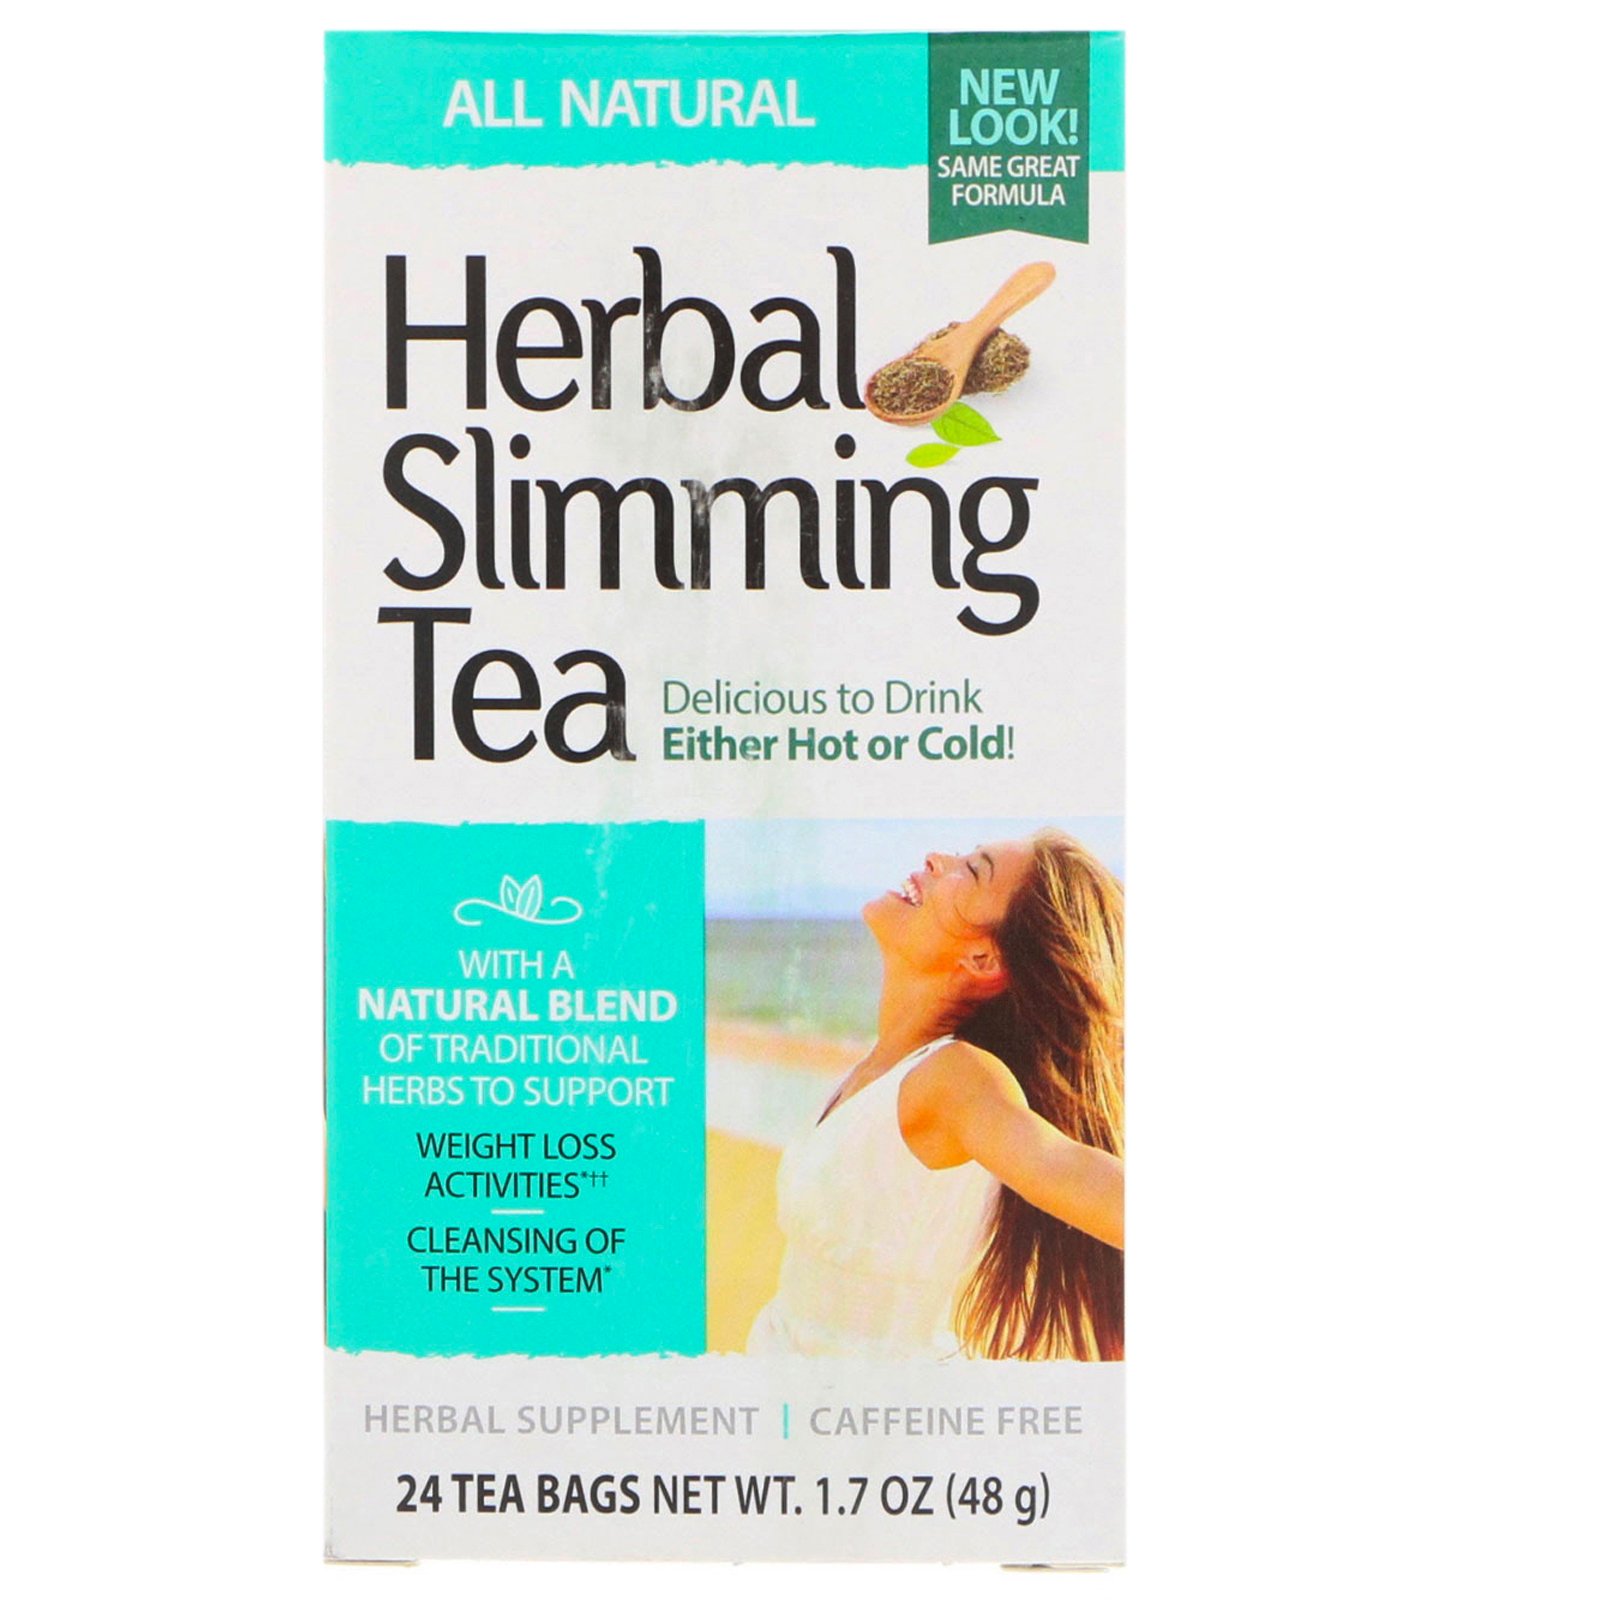 nature slimming tea